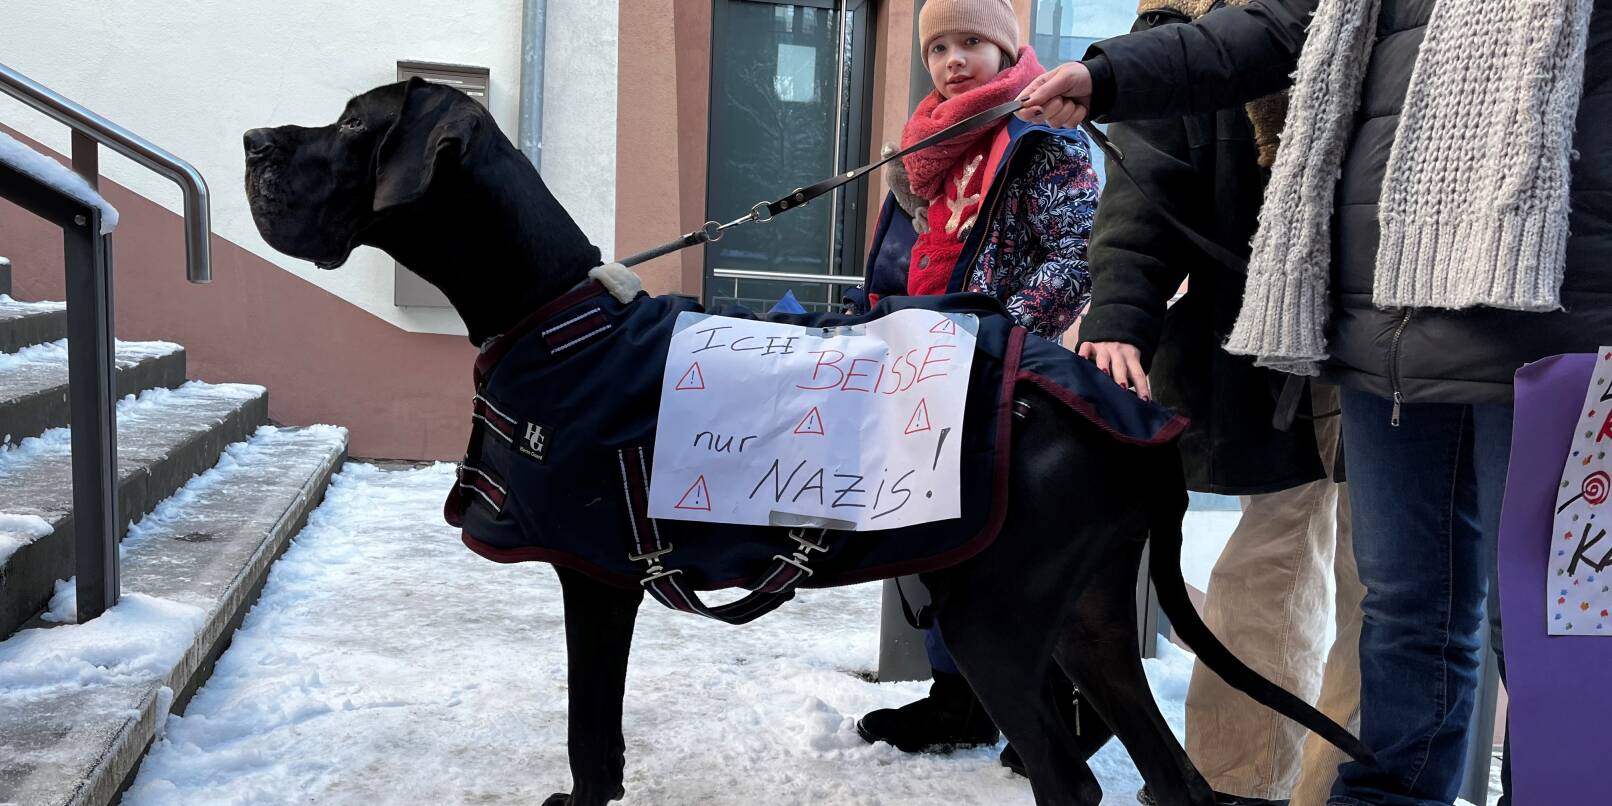 Demonstrantin auf vier Pfoten: "Ich beiße nur Nazis" steht auf einem Plakat, das Dogge Wilma an ihrem Hundemantel trägt.